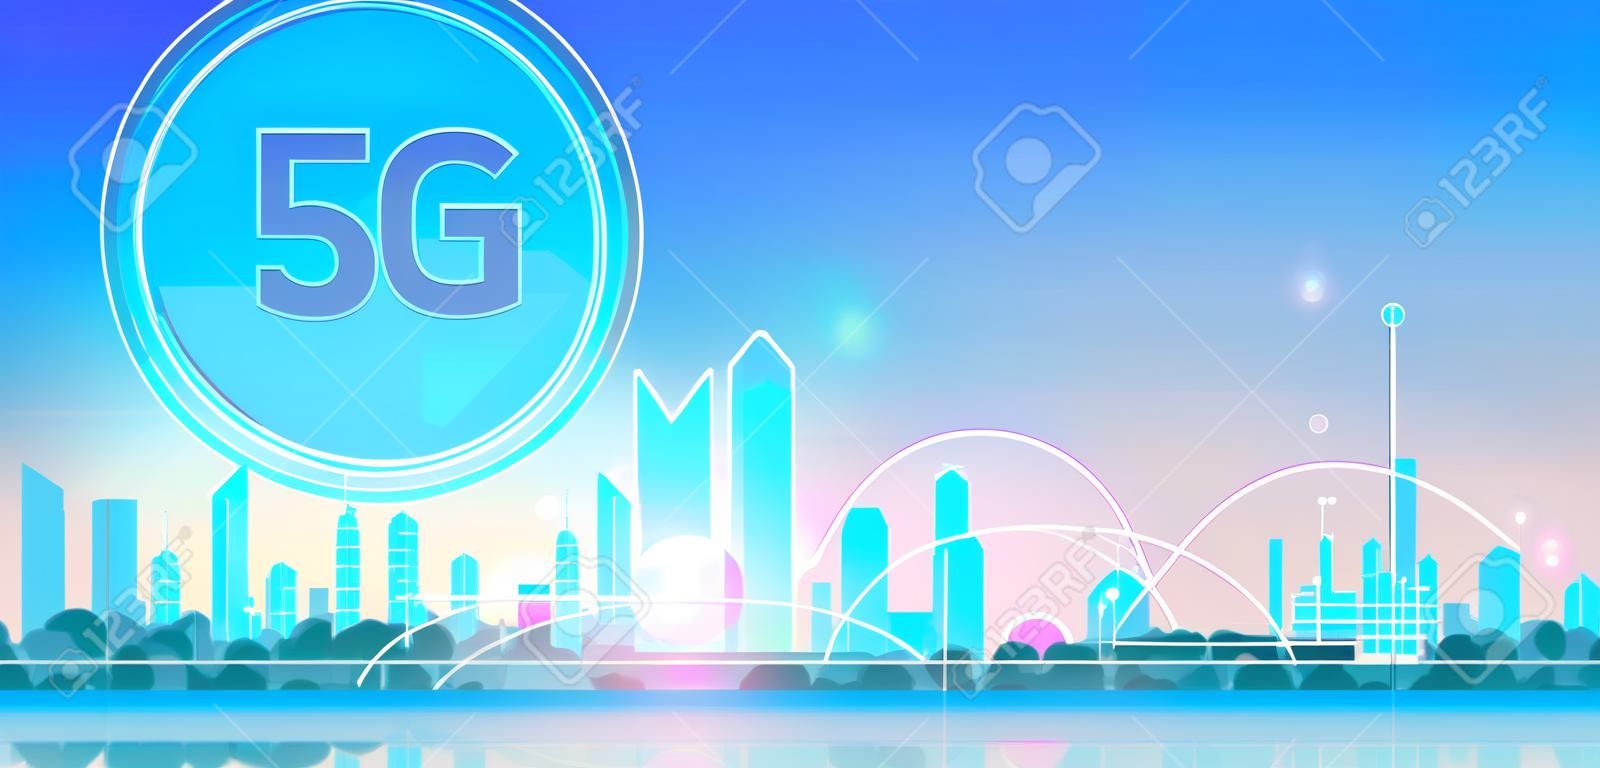 inteligentne miasto 5G sieć komunikacji online systemy bezprzewodowe koncepcja połączenia piąta innowacyjna generacja globalnego szybkiego internetu nowoczesnego pejzażu tła płaskiego poziomego transparentu ilustracji wektorowych